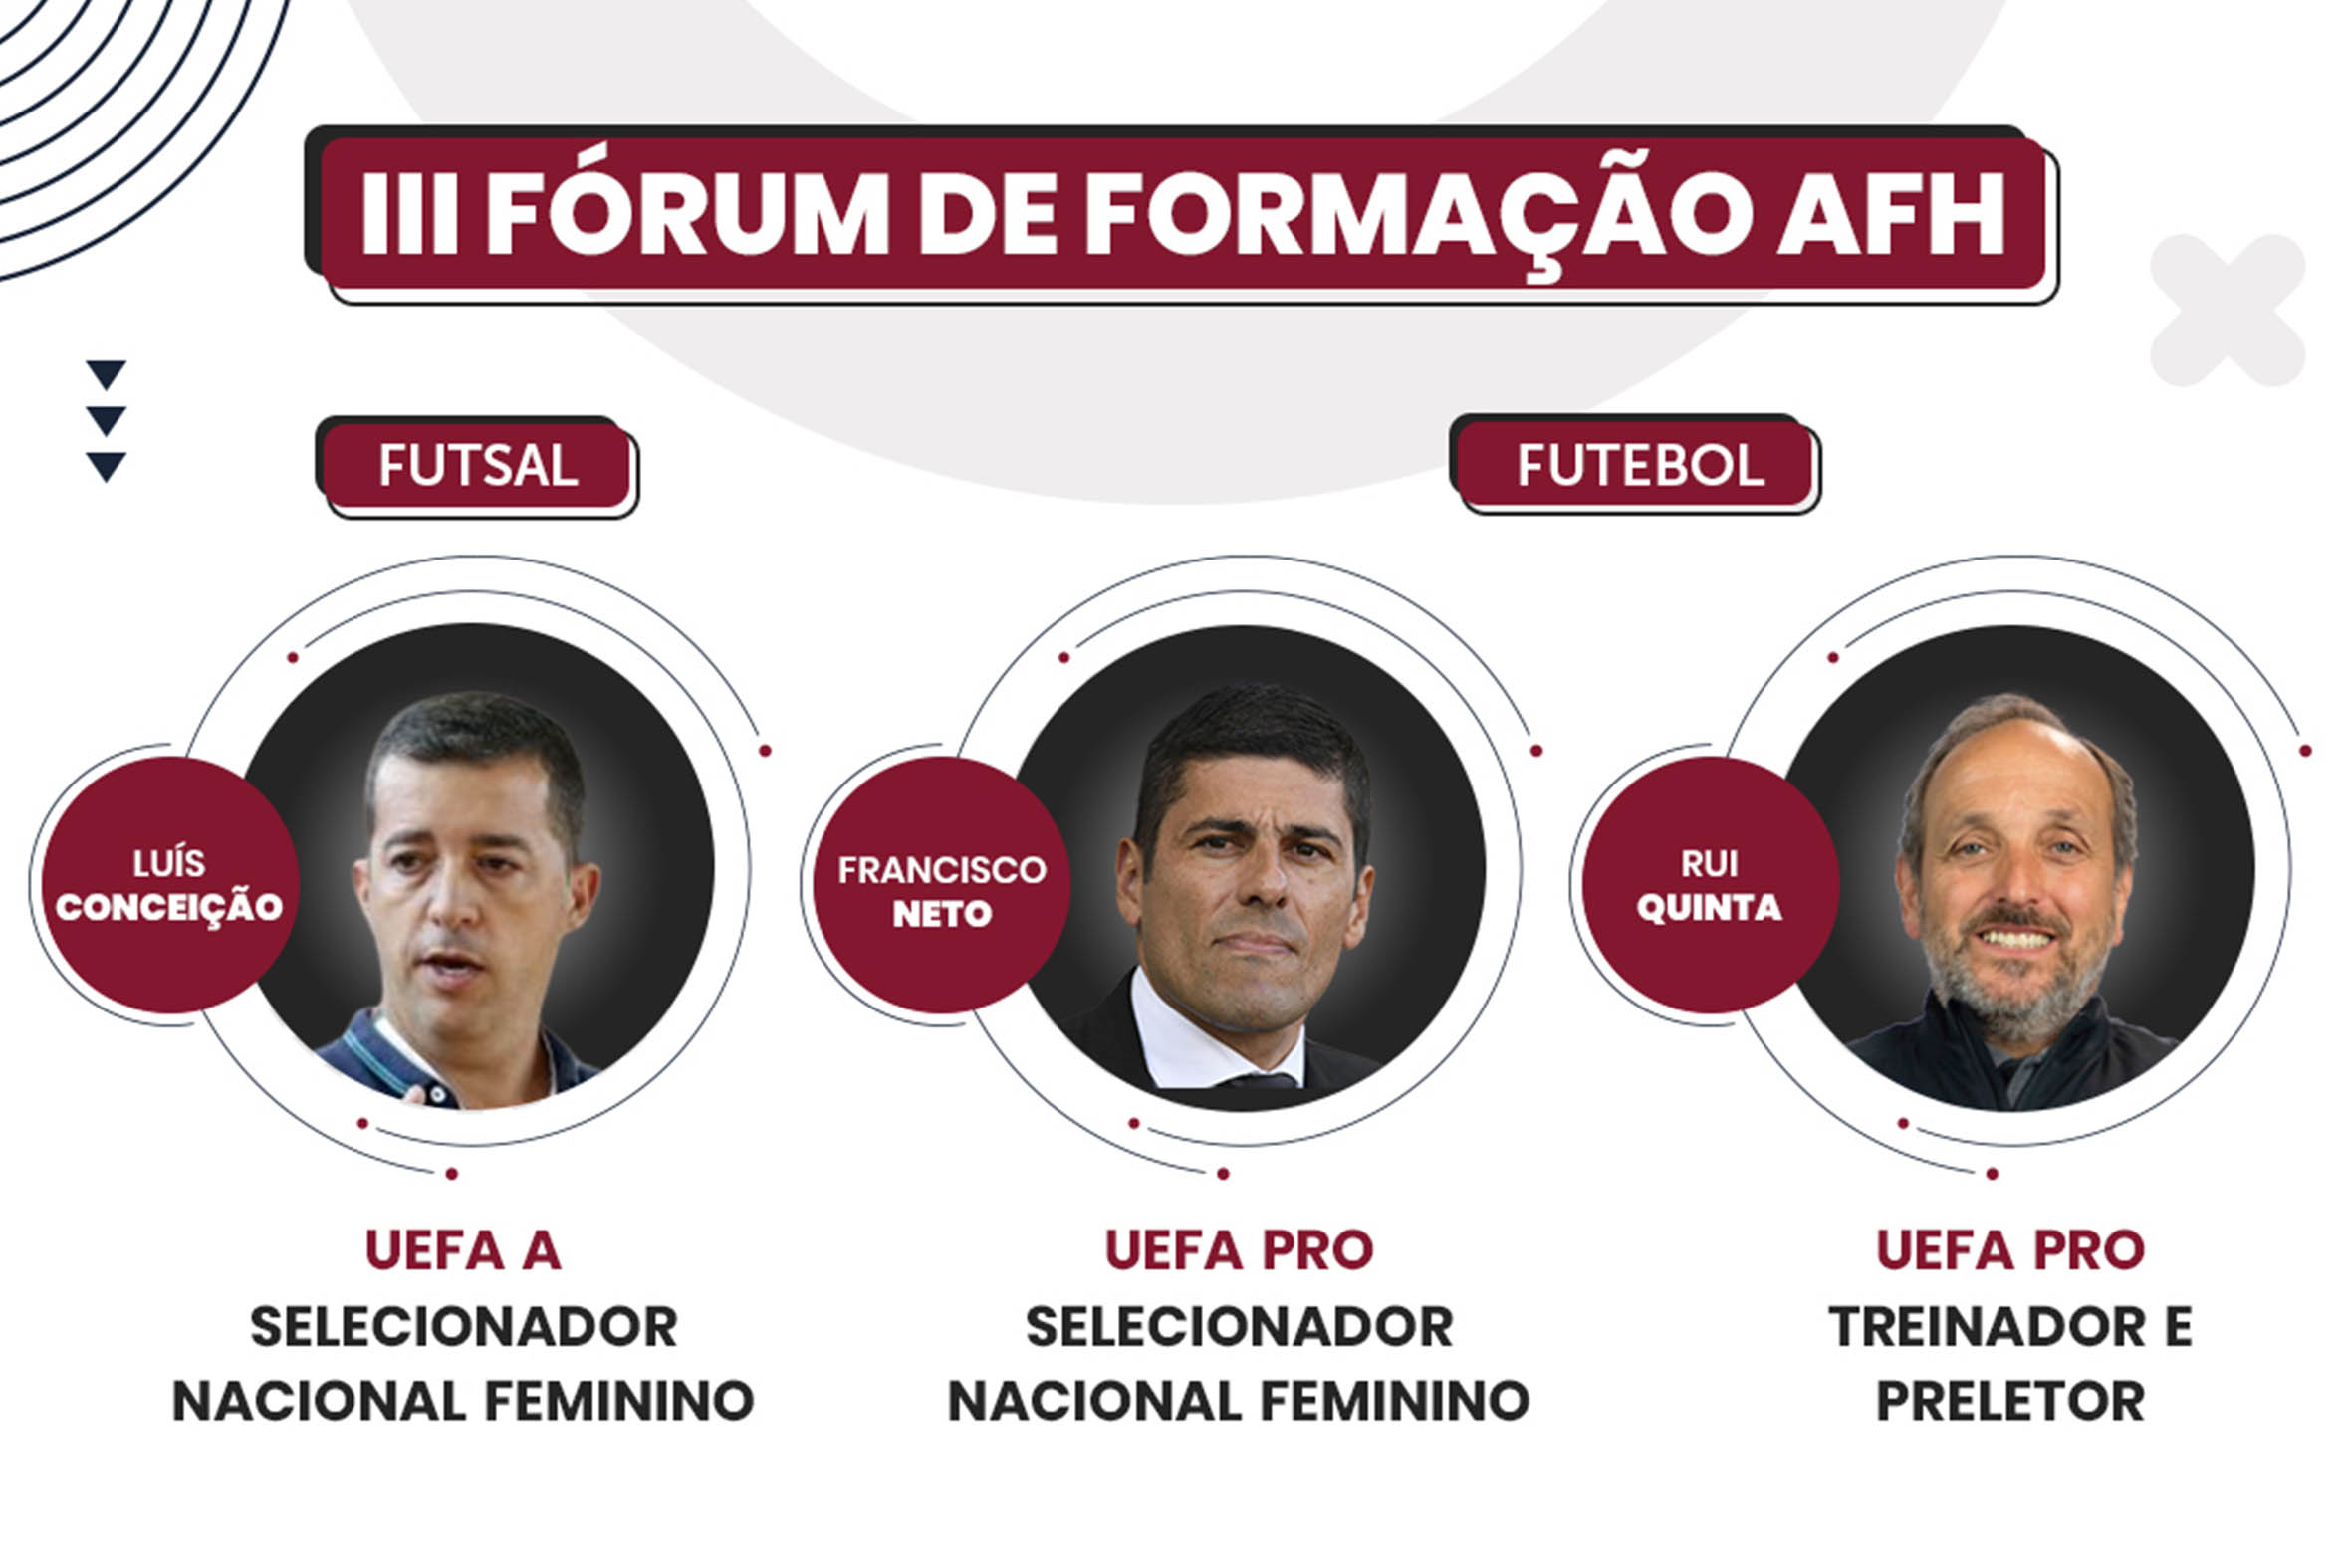 III Fórum de Formação AFH - Formação Contínua de Futebol e Futsal